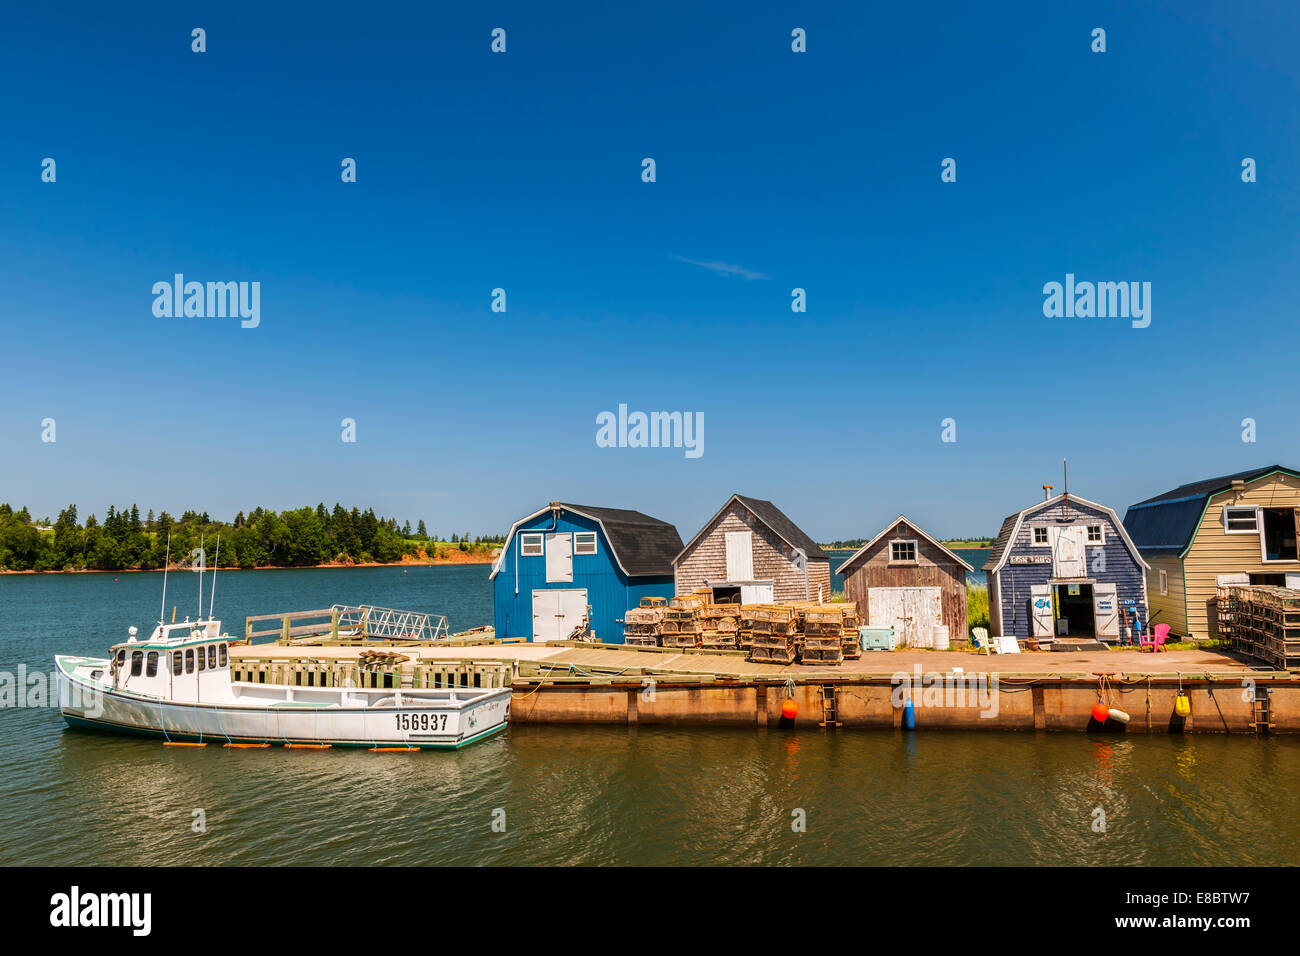 CAVENDISH, Ile du Prince-Édouard, Canada - le 15 juillet 2013 : bateau de pêche amarré près des casiers à homard illustré le 15 juillet 2013 Banque D'Images